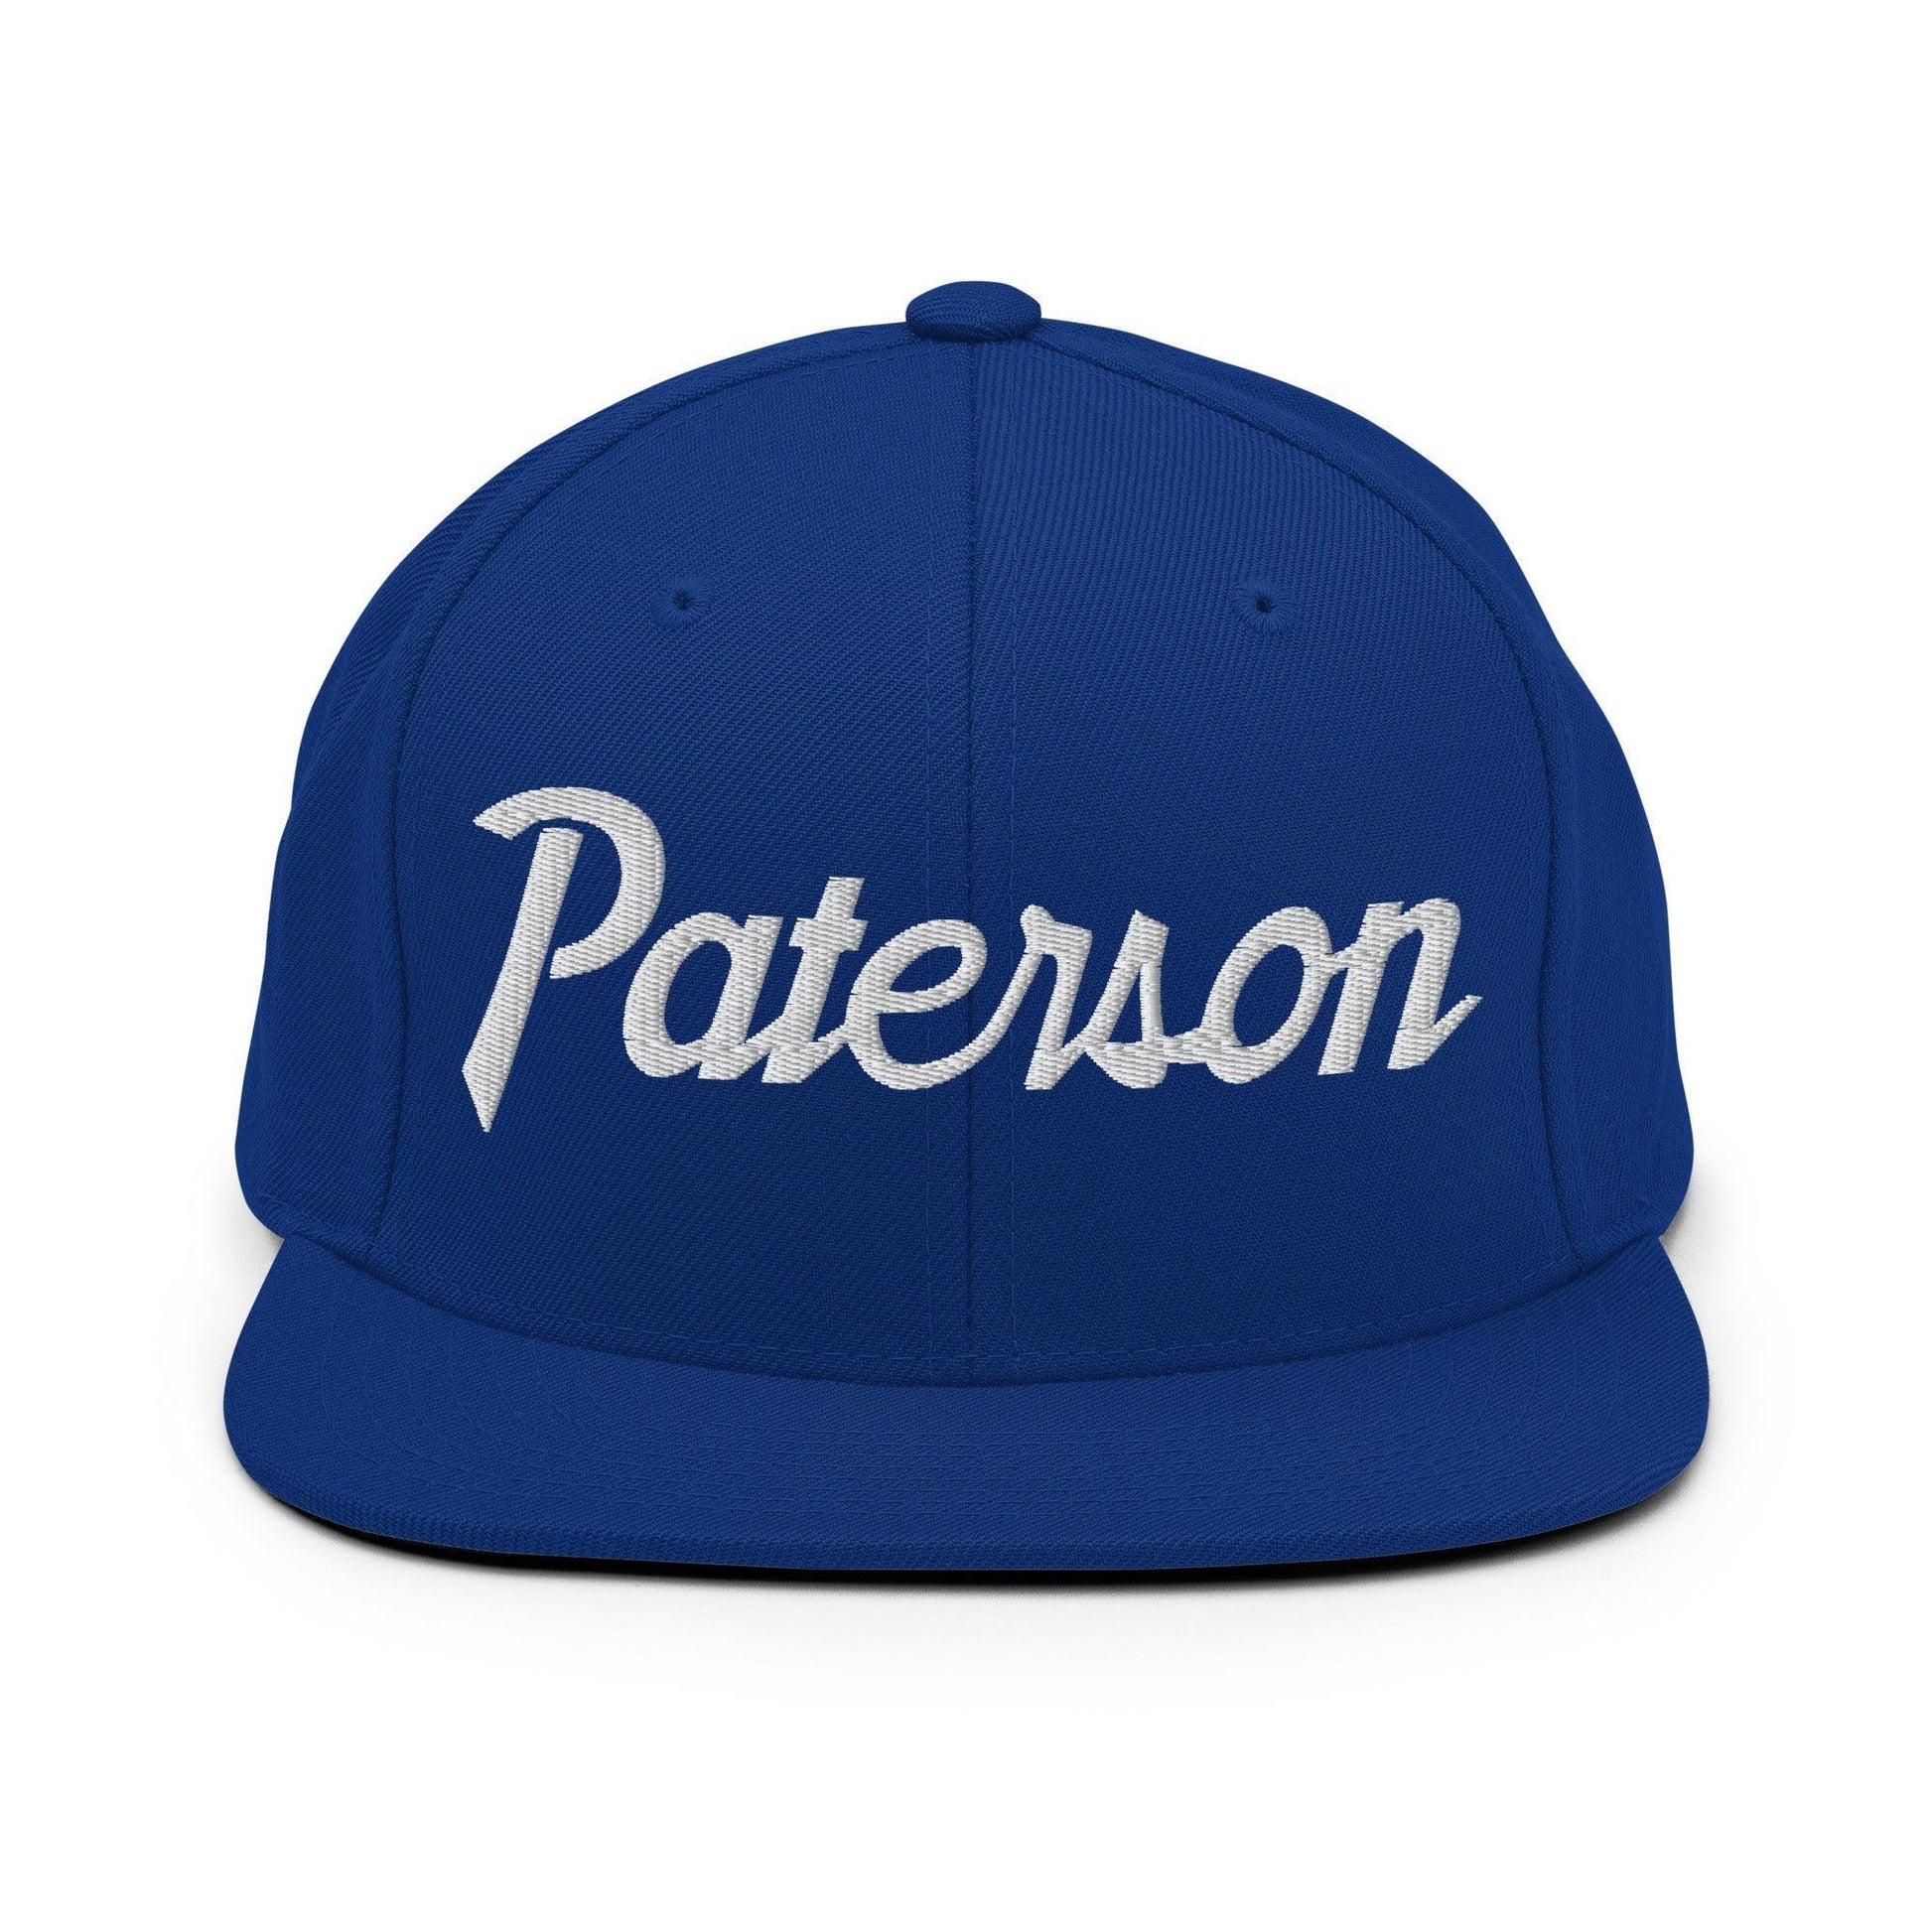 Paterson Script Snapback Hat Royal Blue